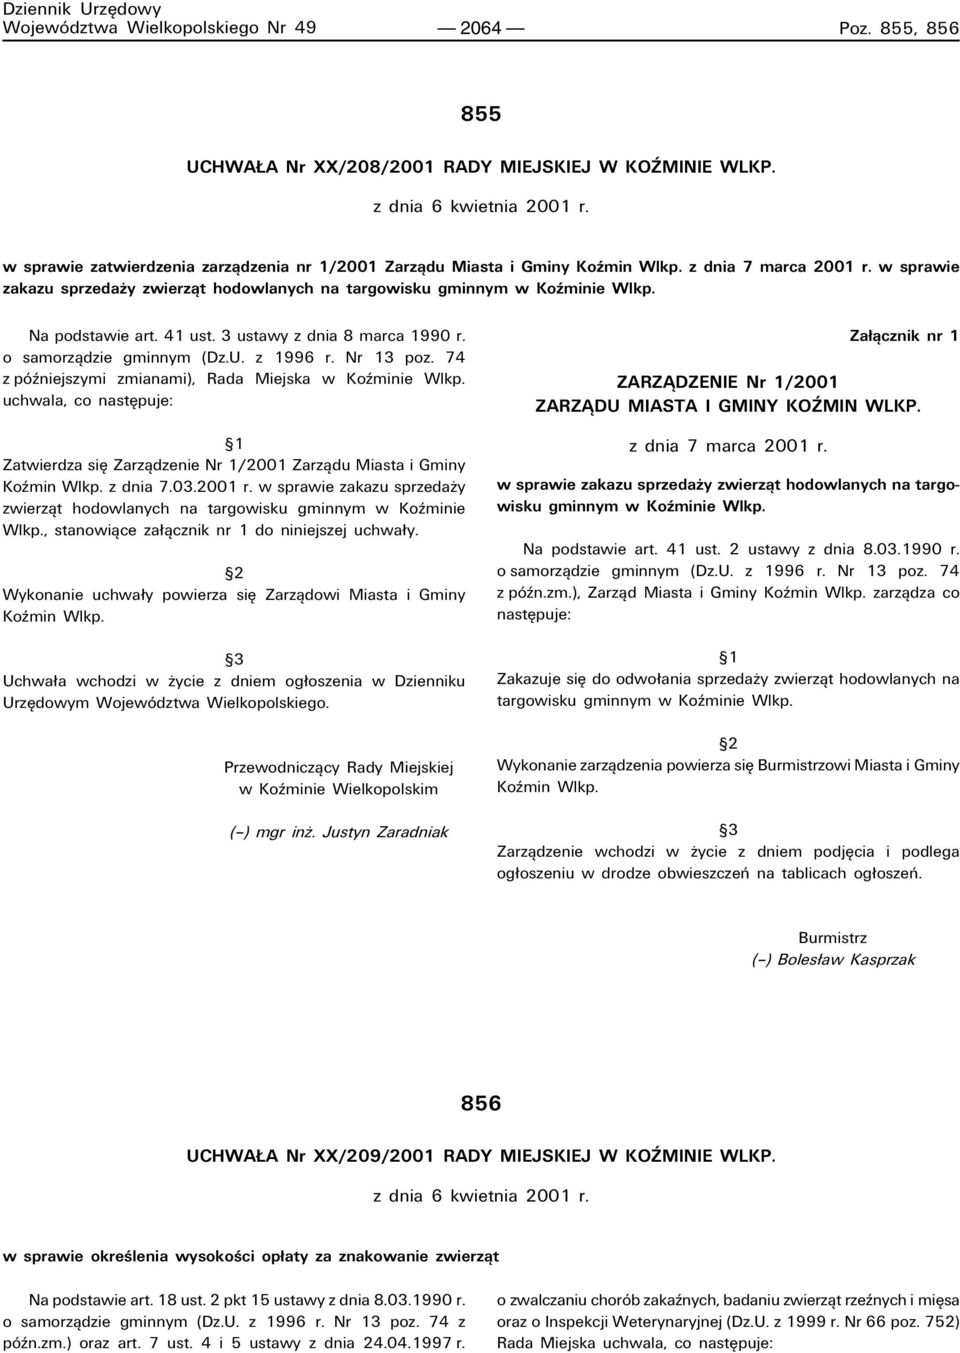 Na podstawie art. 41 ust. 3 ustawy z dnia 8 marca 1990 r. o samorzπdzie gminnym (Dz.U. z 1996 r. Nr 13 poz. 74 z pûüniejszymi zmianami), Rada Miejska w Koüminie Wlkp.